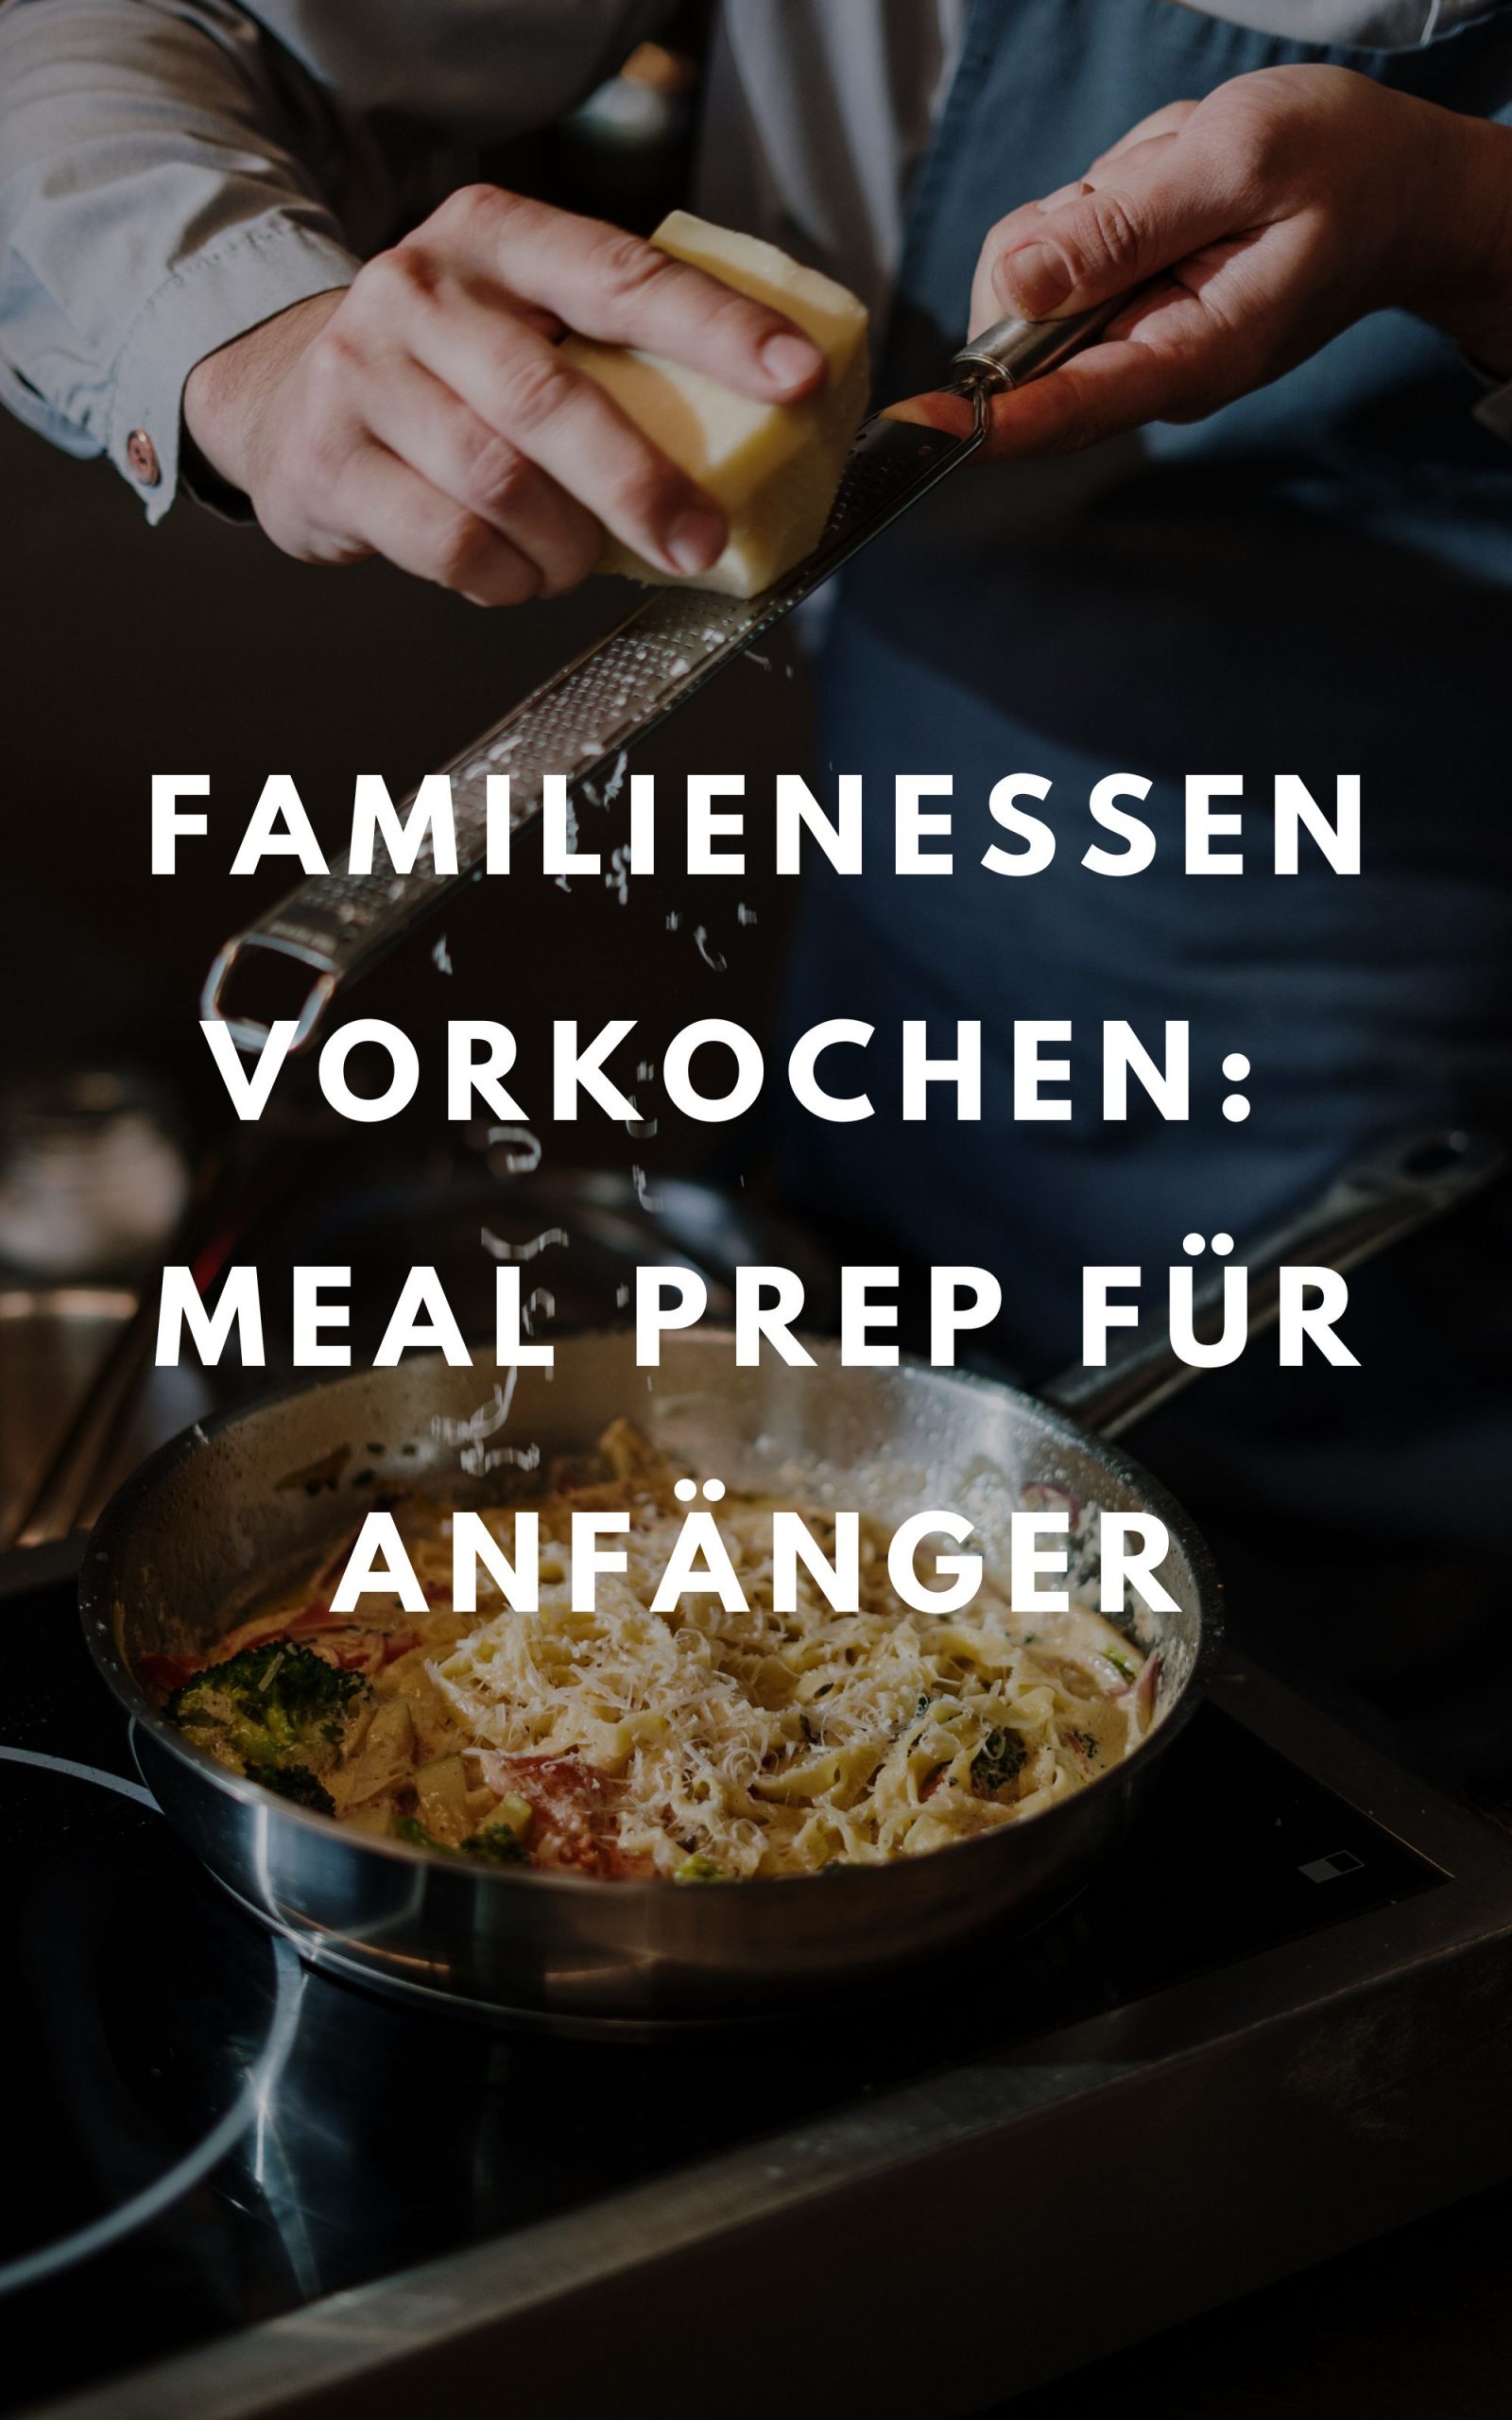 Familienessen vorkochen - Meal Prep für Anfänger